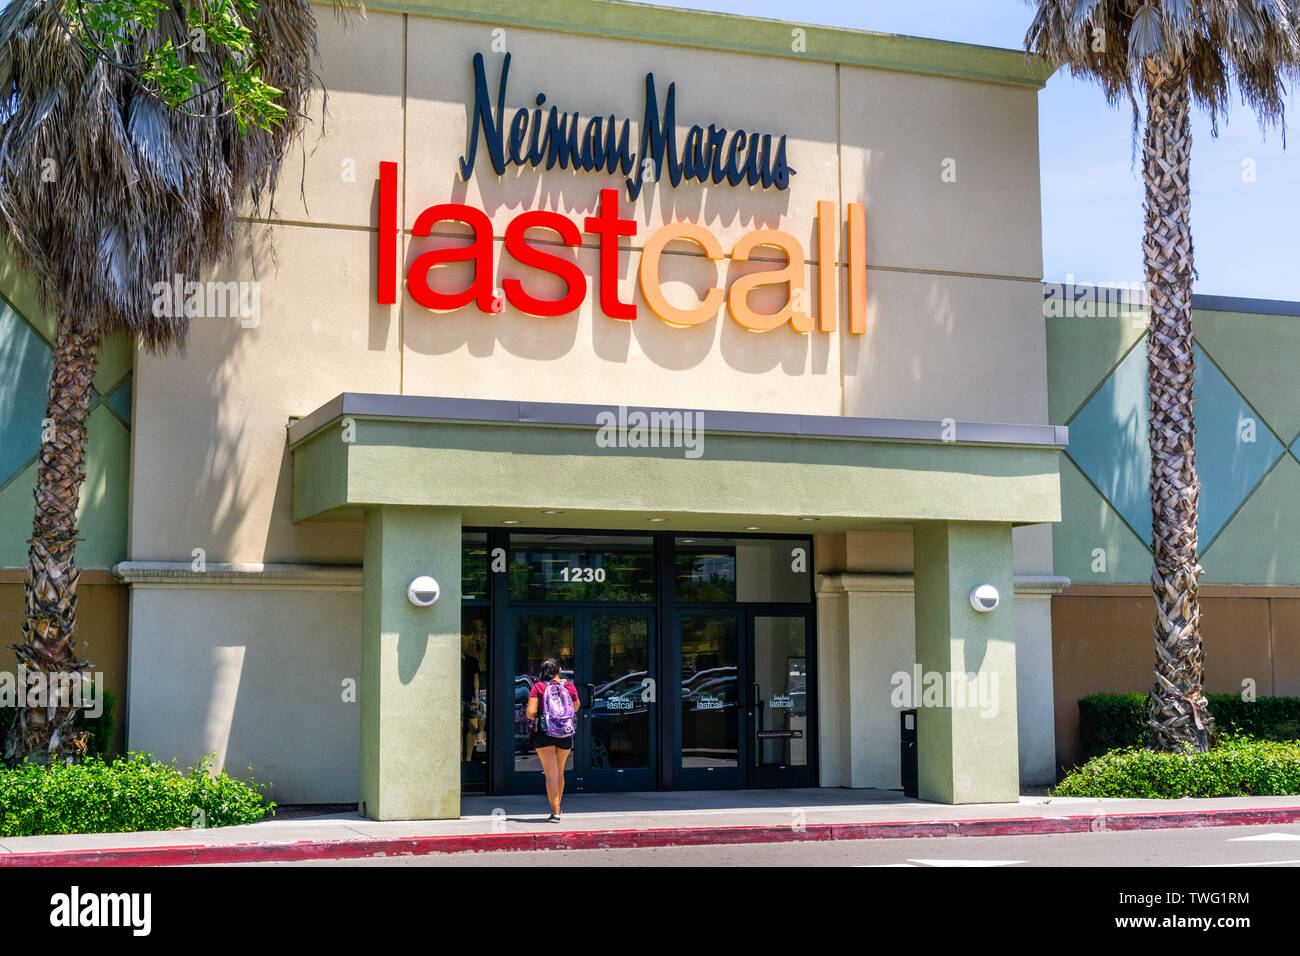 13 juin 2019 Milpitas / CA / USA - Neiman Marcus Last Call de l'entrée du magasin à la Great Mall South San Francisco bay area Banque D'Images